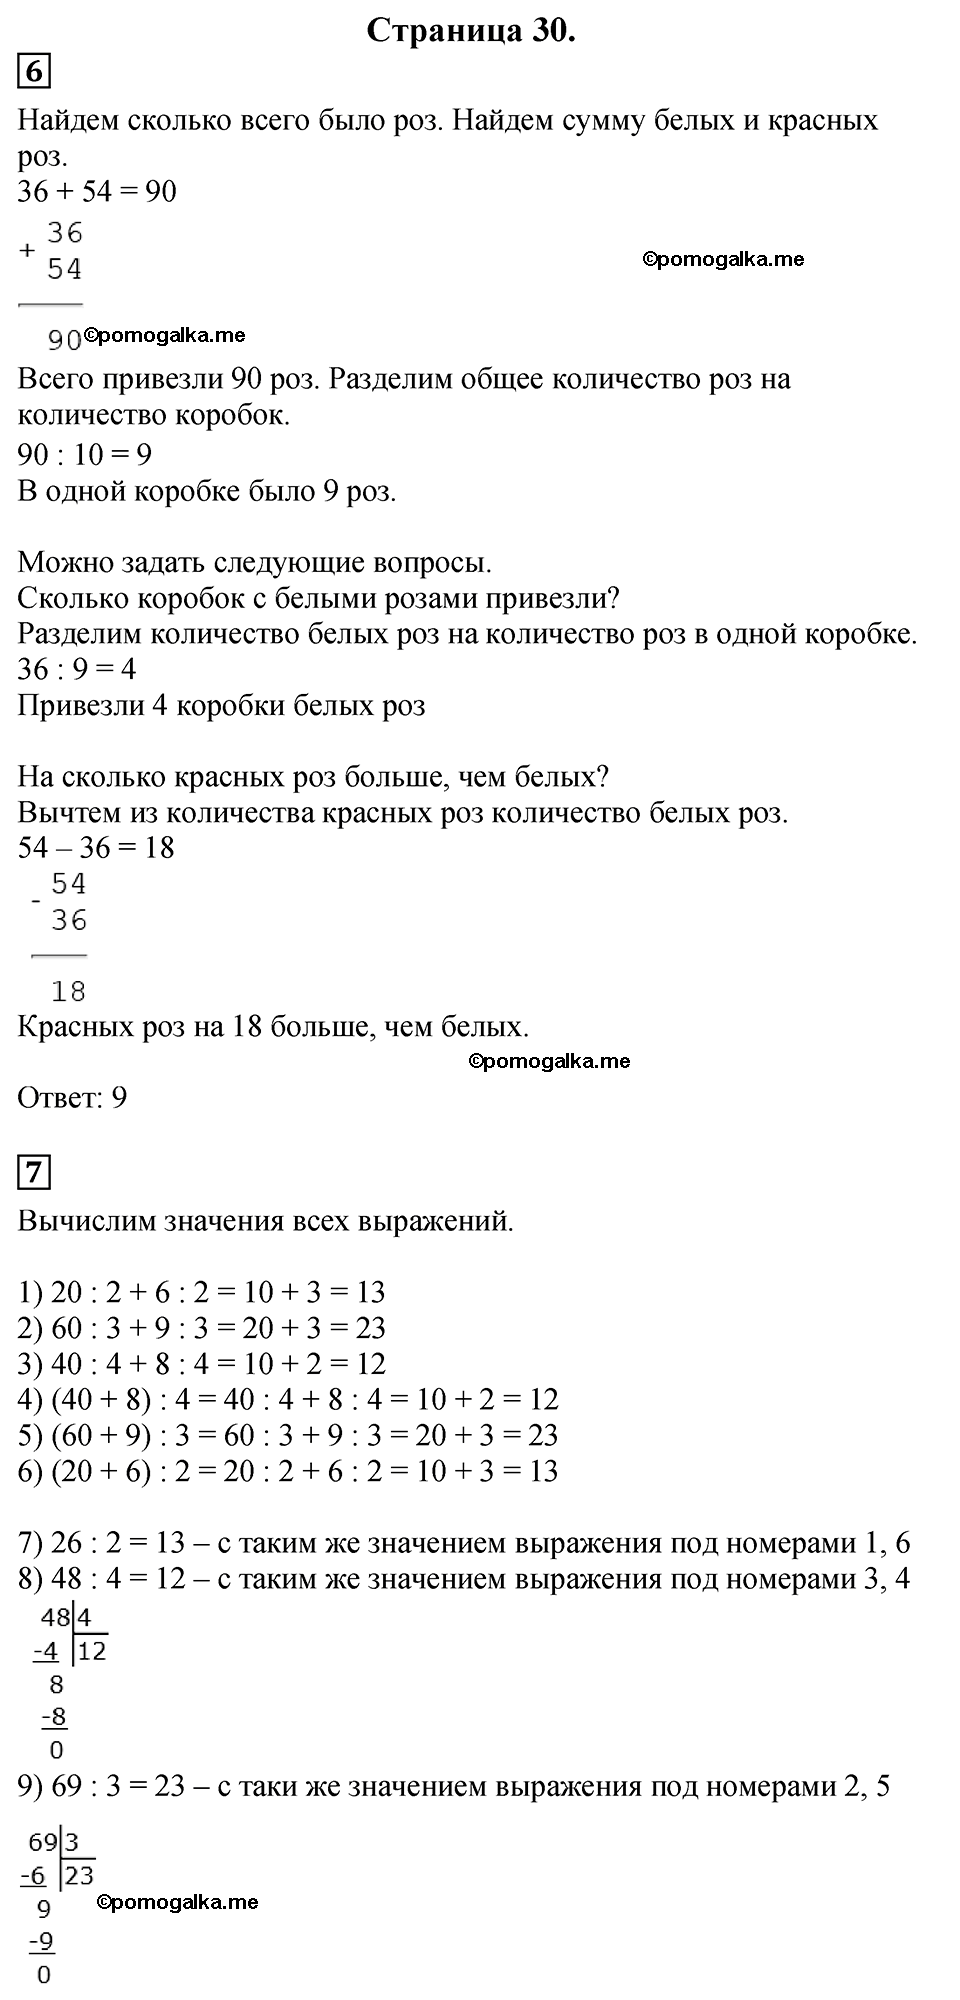 Страница №30 Часть 2 математика 3 класс Дорофеев